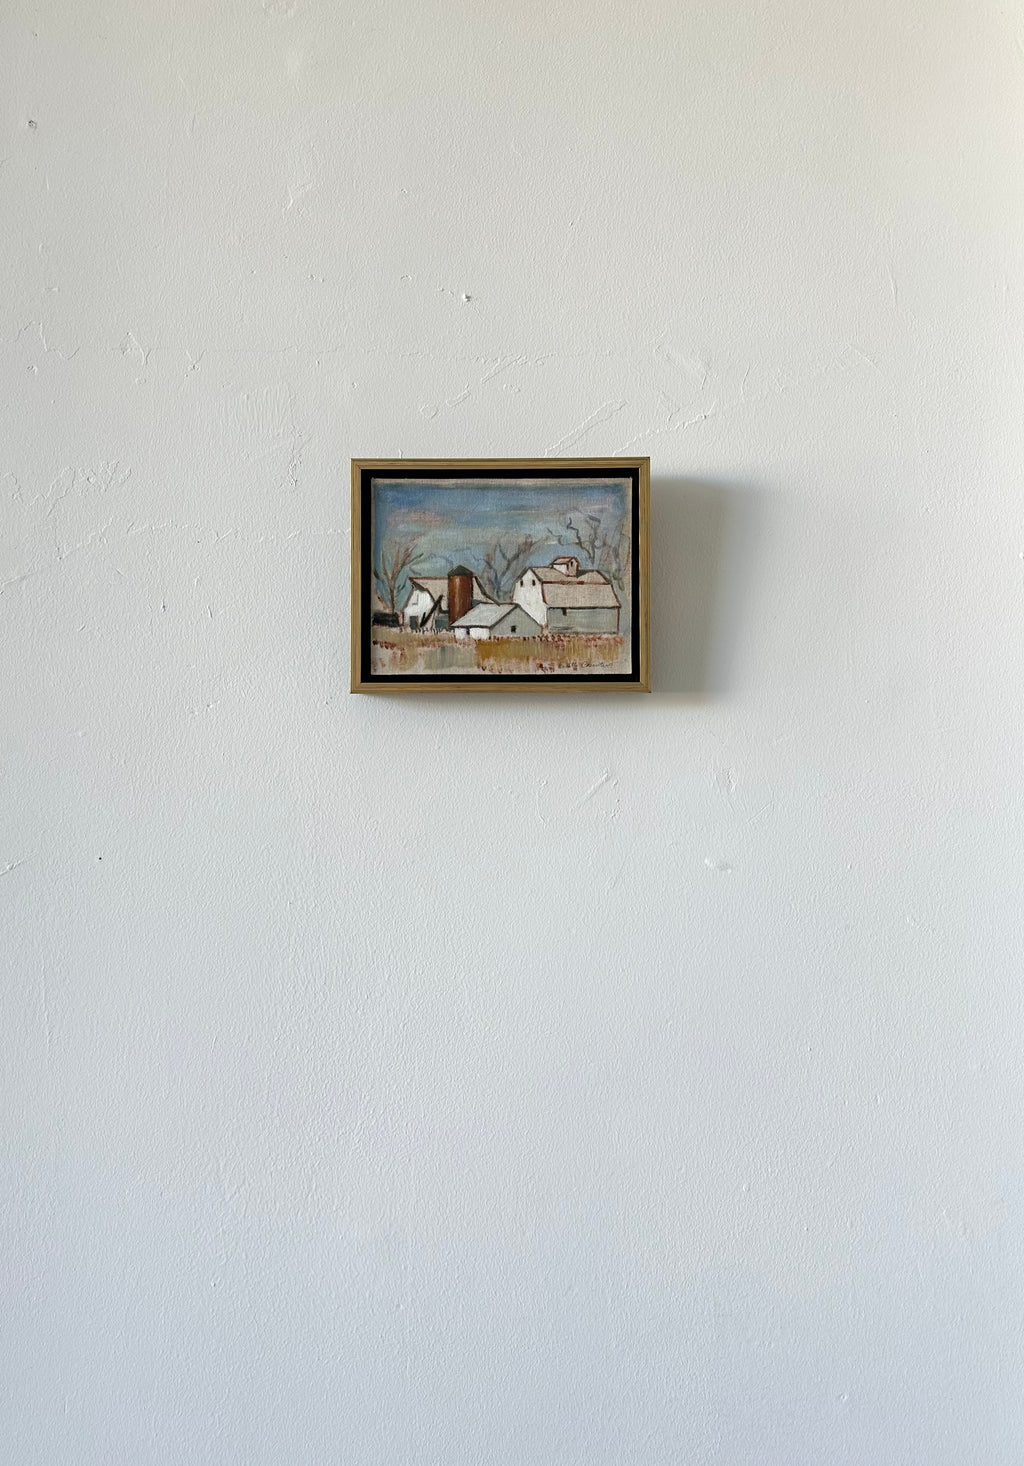 "Farmstead" 7" x 10" framed oil on linen landscape of barns